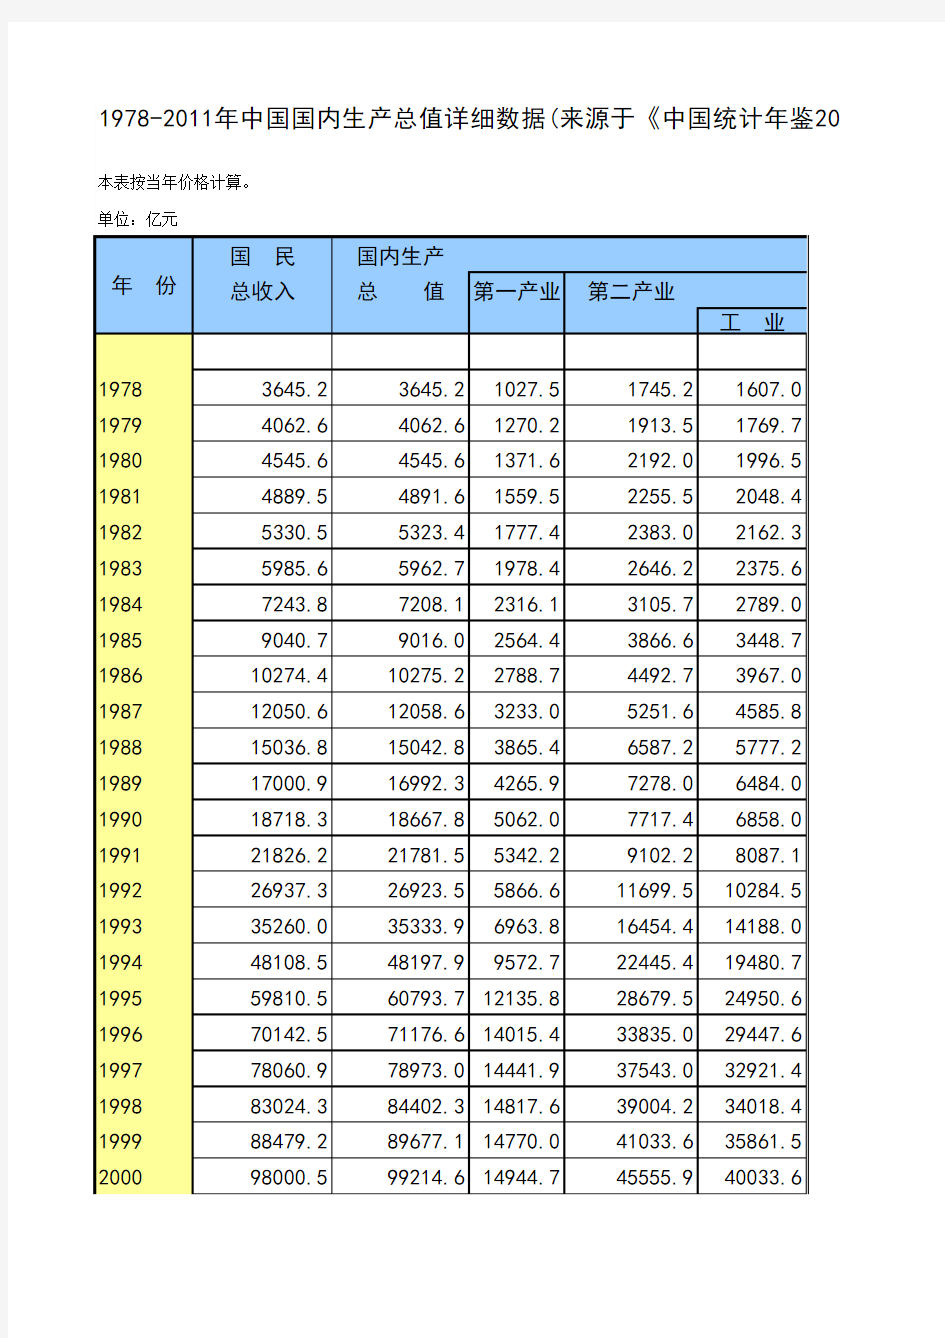 1978-2011年中国国内生产总值详细数据(来源于《中国统计年鉴2012》)